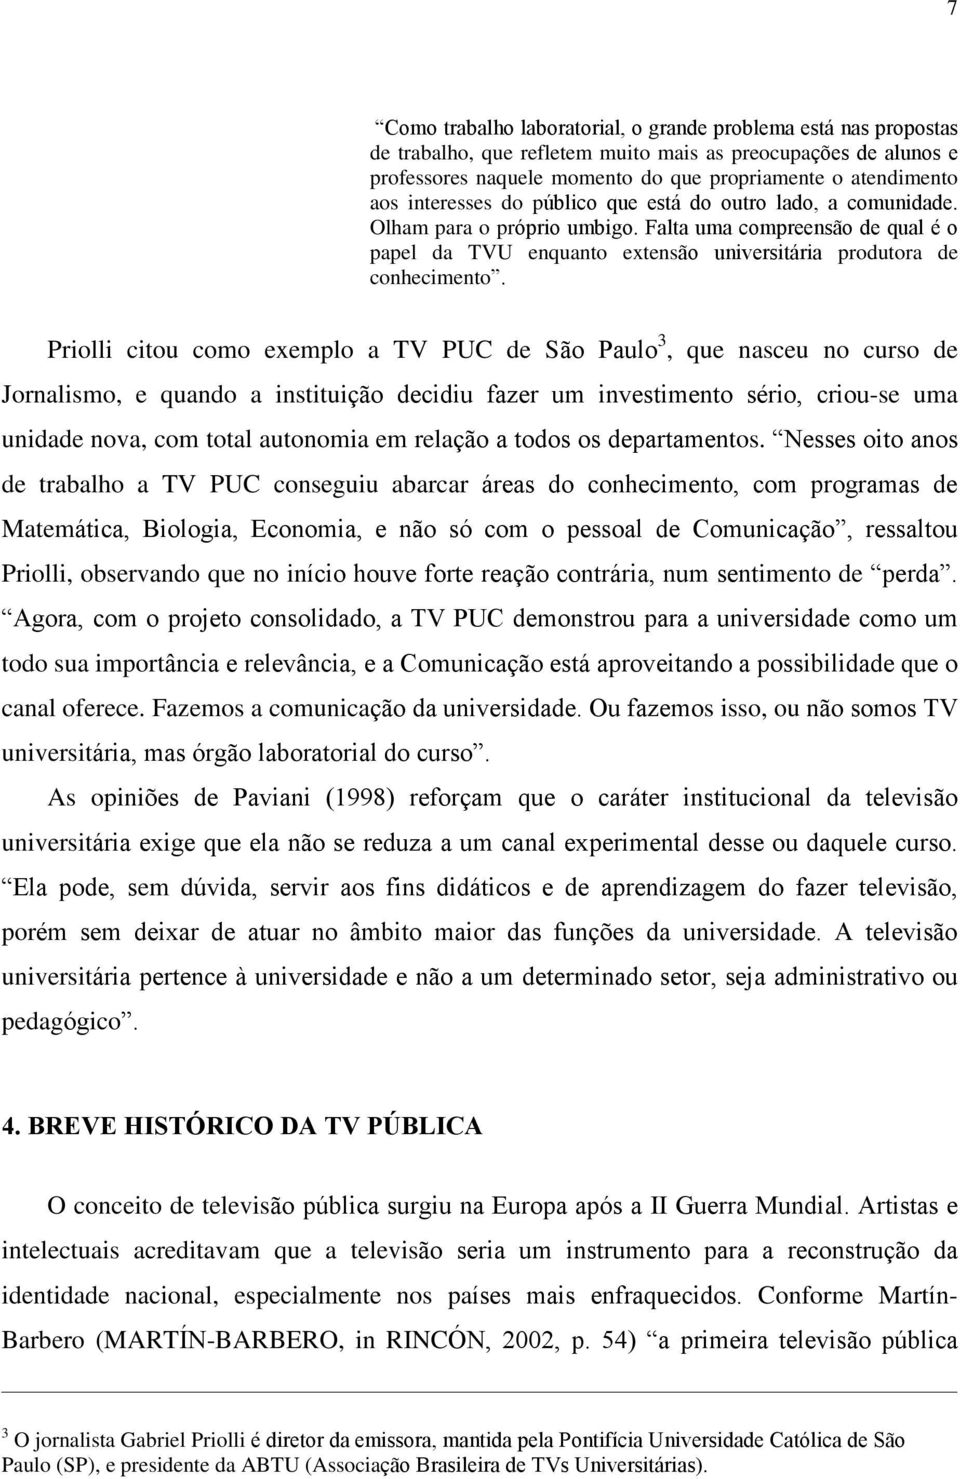 Priolli citou como exemplo a TV PUC de São Paulo 3, que nasceu no curso de Jornalismo, e quando a instituição decidiu fazer um investimento sério, criou-se uma unidade nova, com total autonomia em